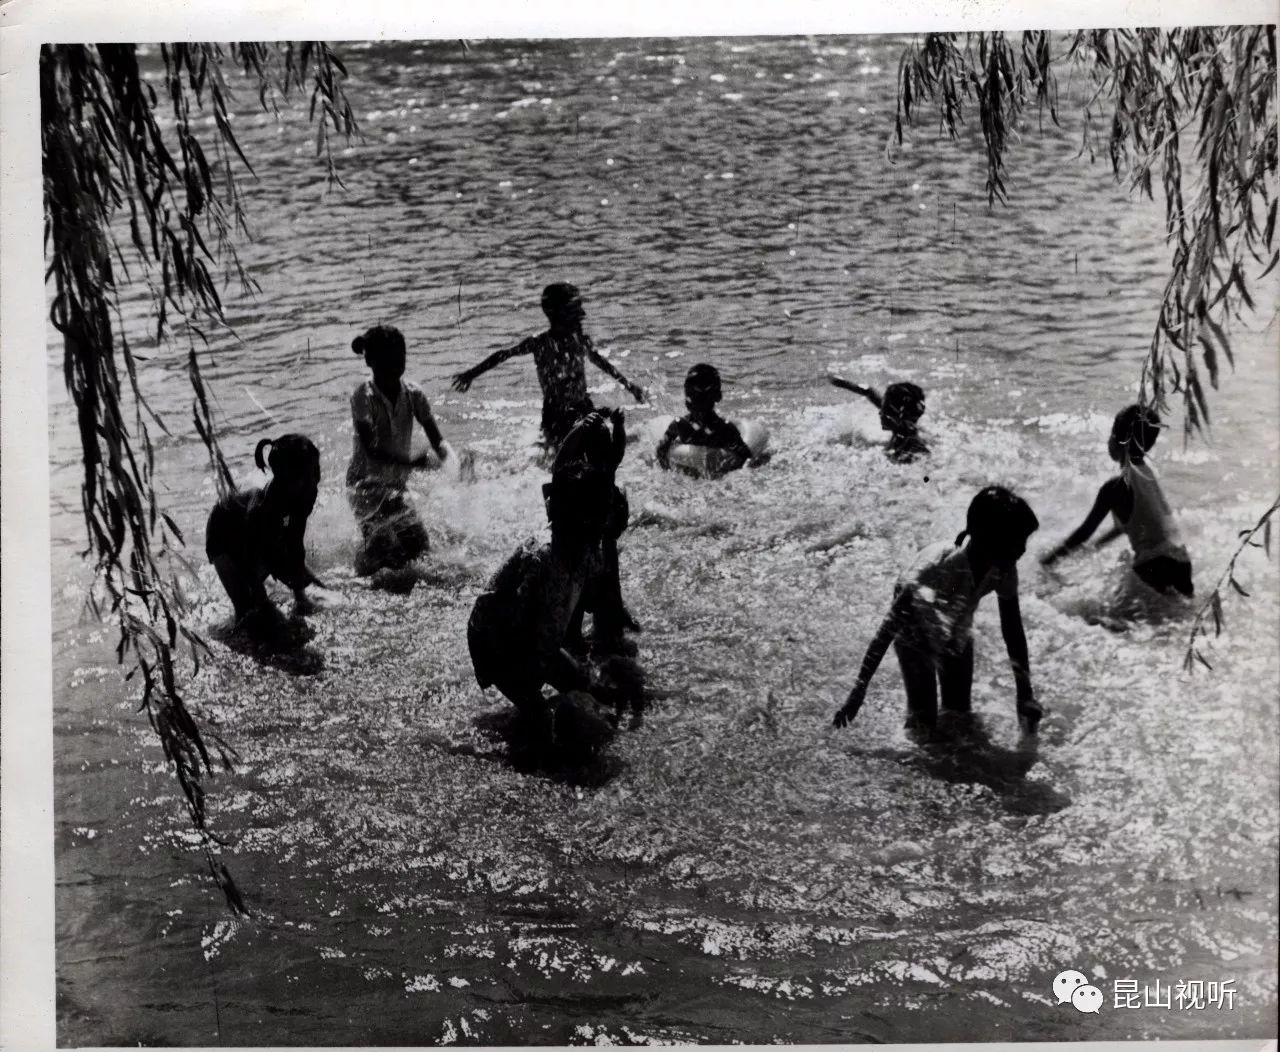 1973年,儿童游泳